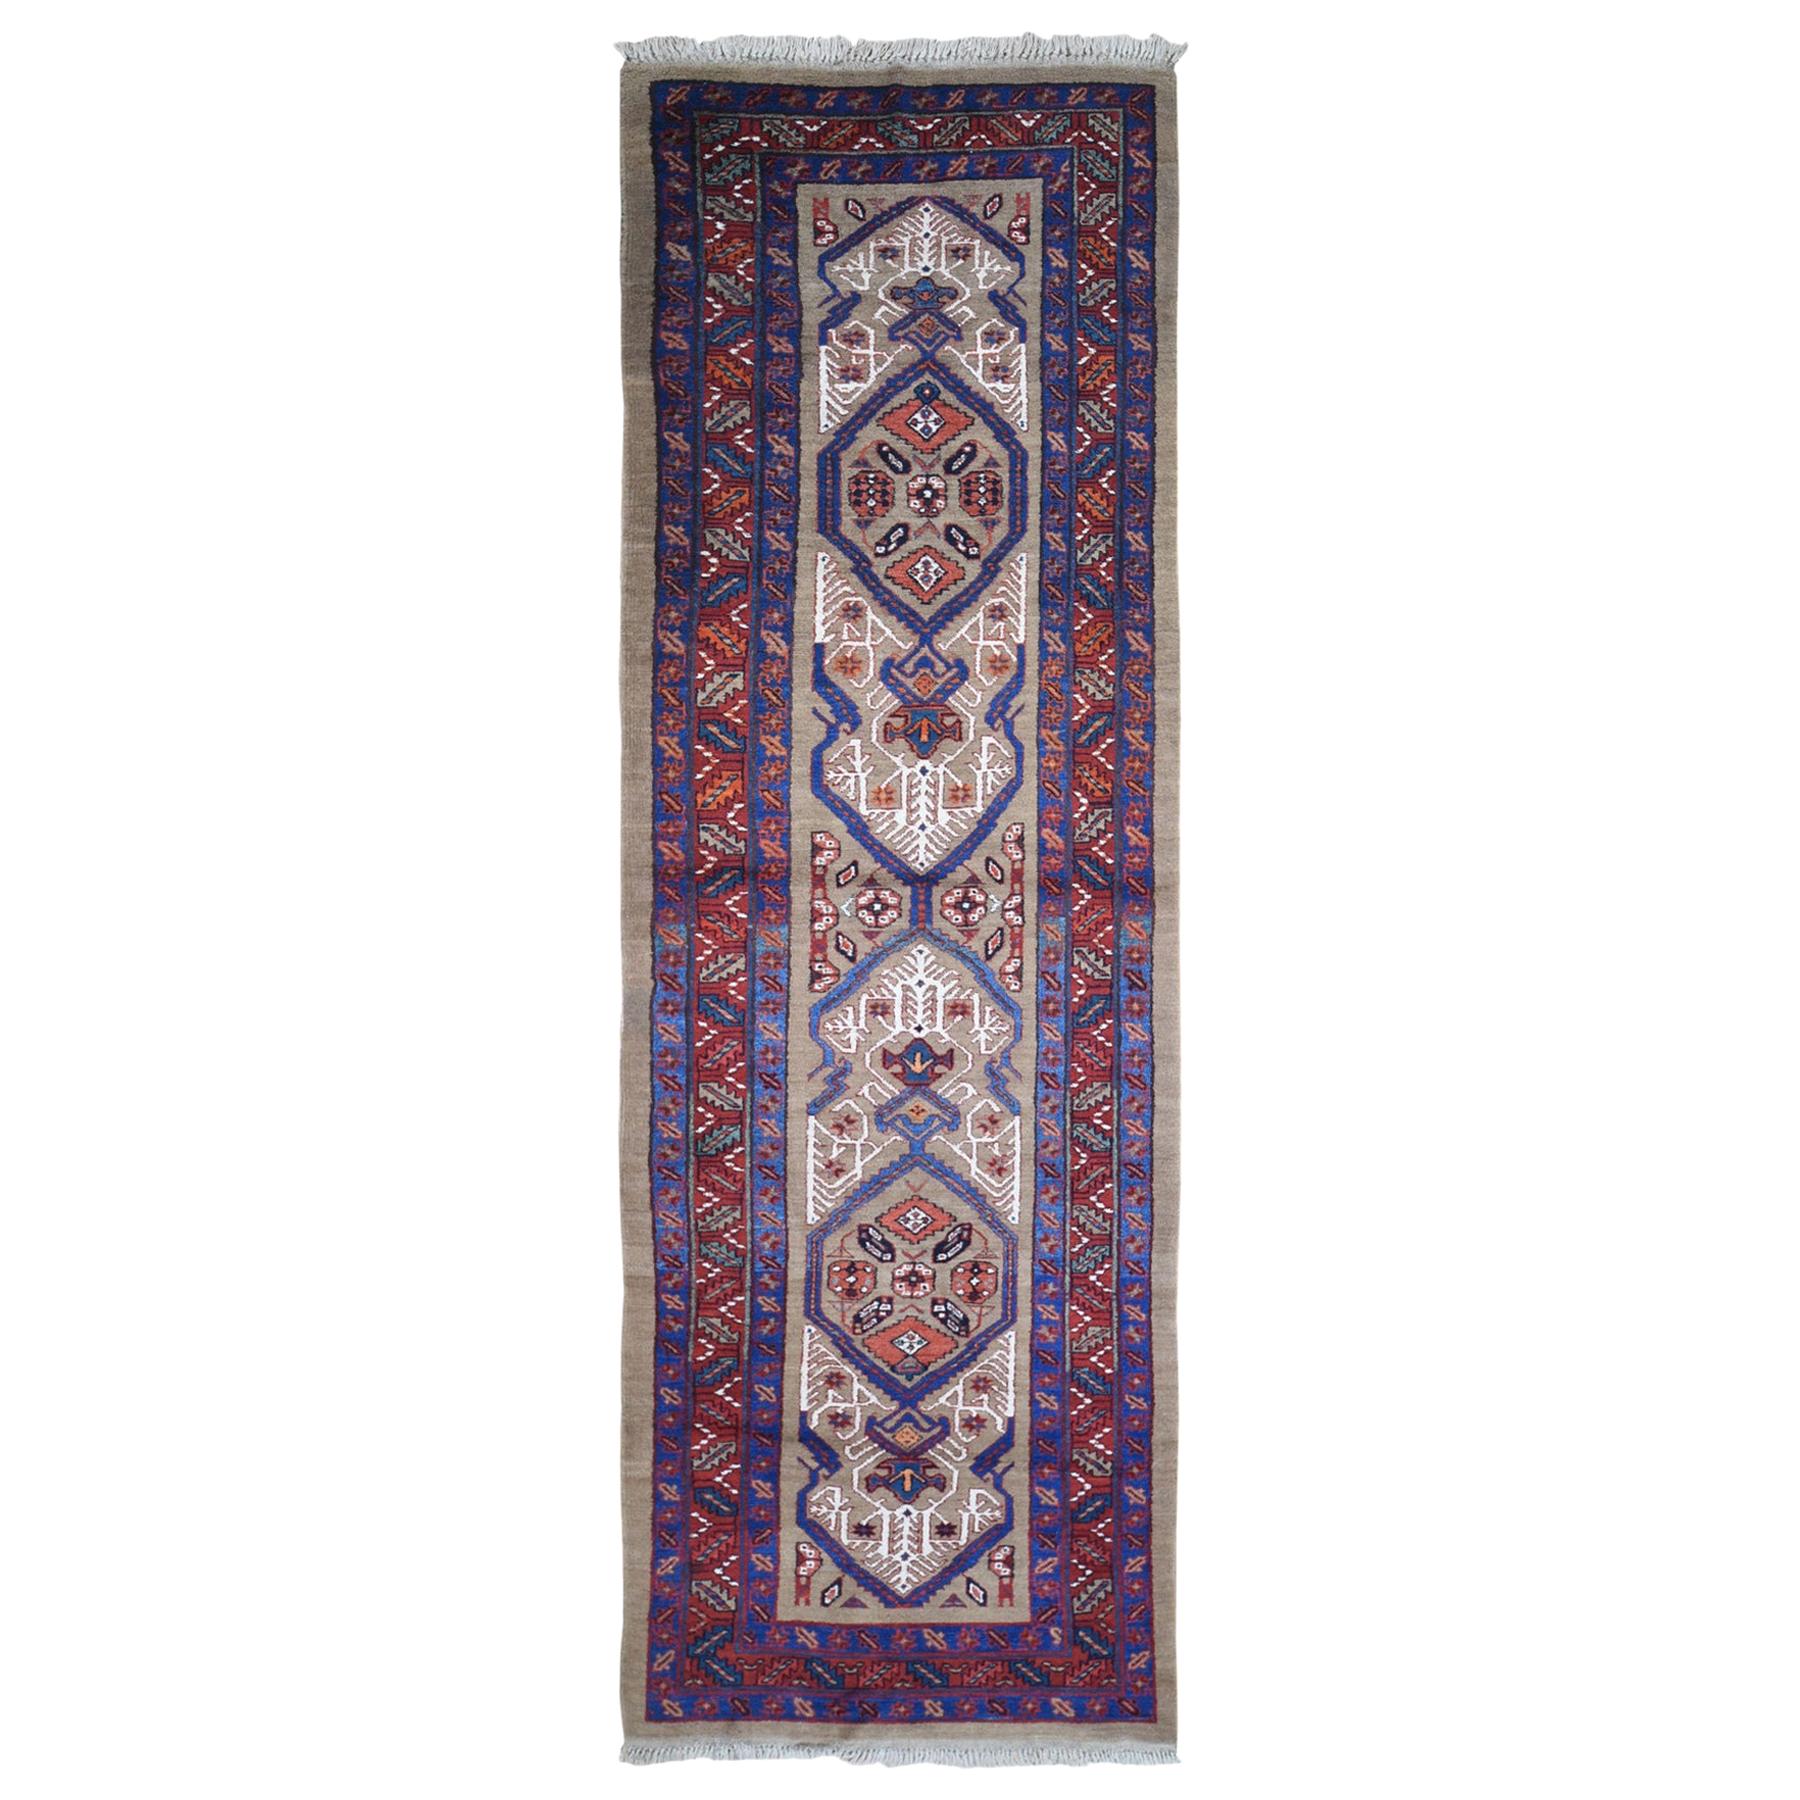 Antiker handgeknüpfter antiker persischer Teppich aus Wolle mit geometrischem Muster, Serabäum, Kamelhaar und Galley